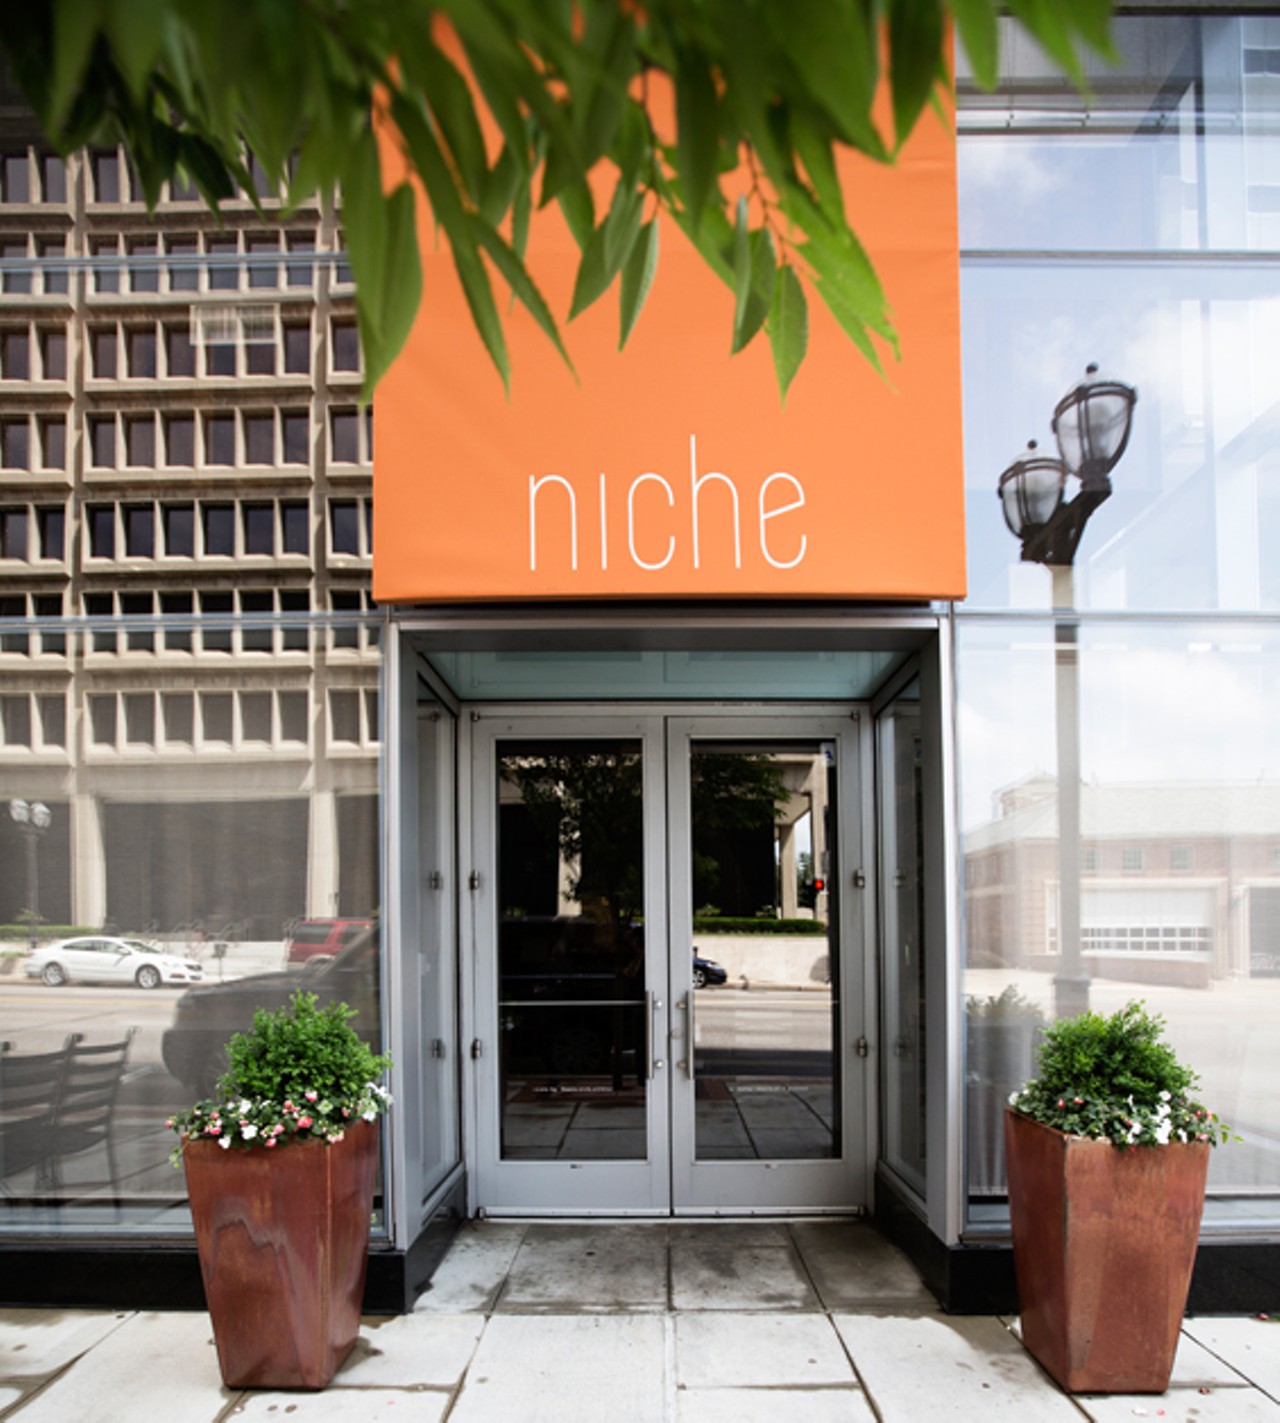 Niche's entrance.